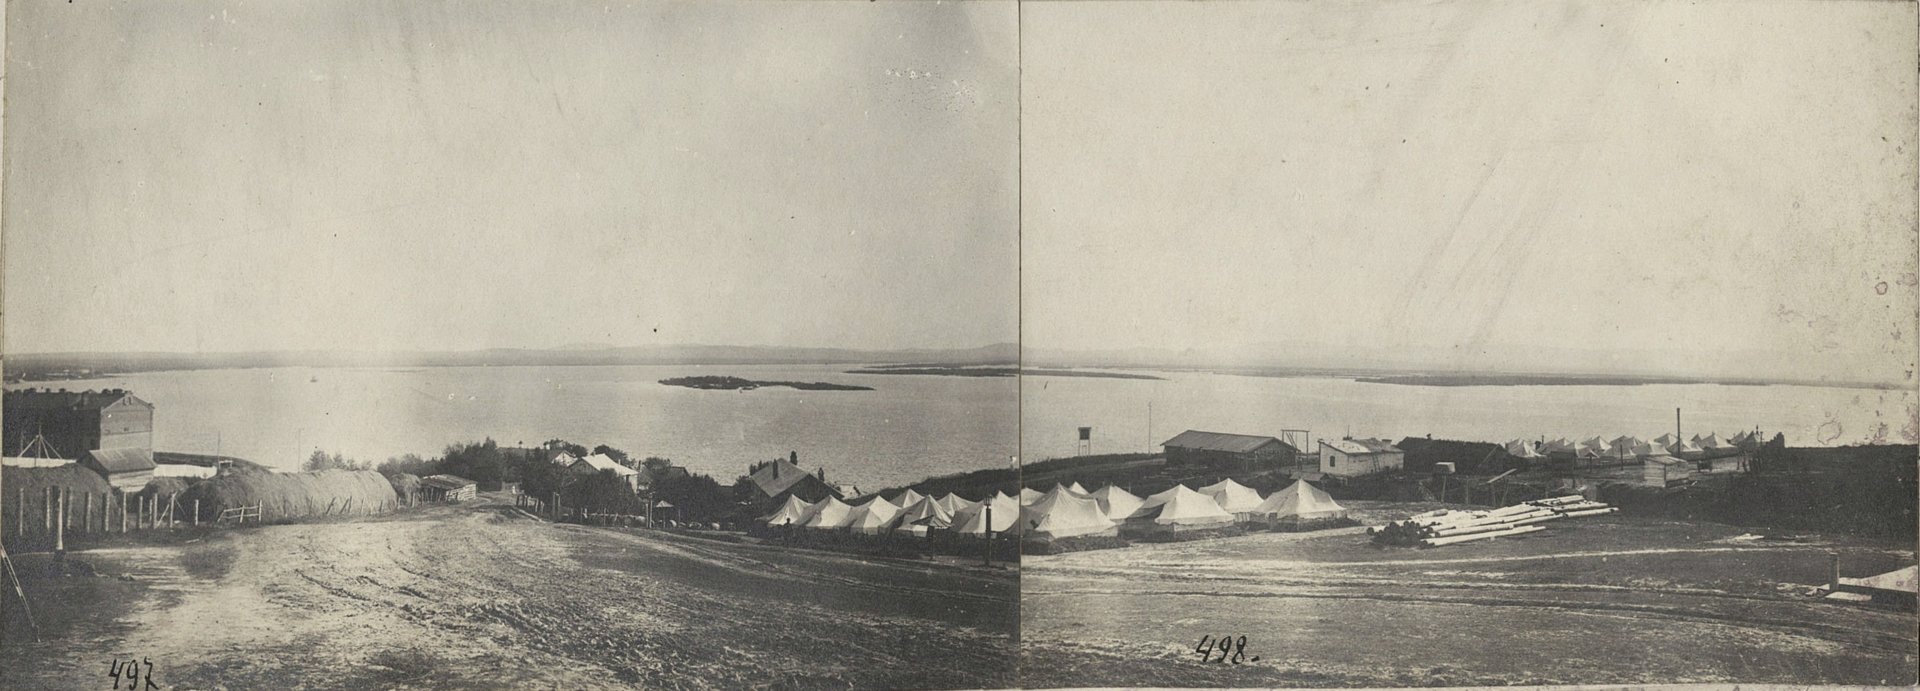 Панорама устья реки Уссури 1912.jpg